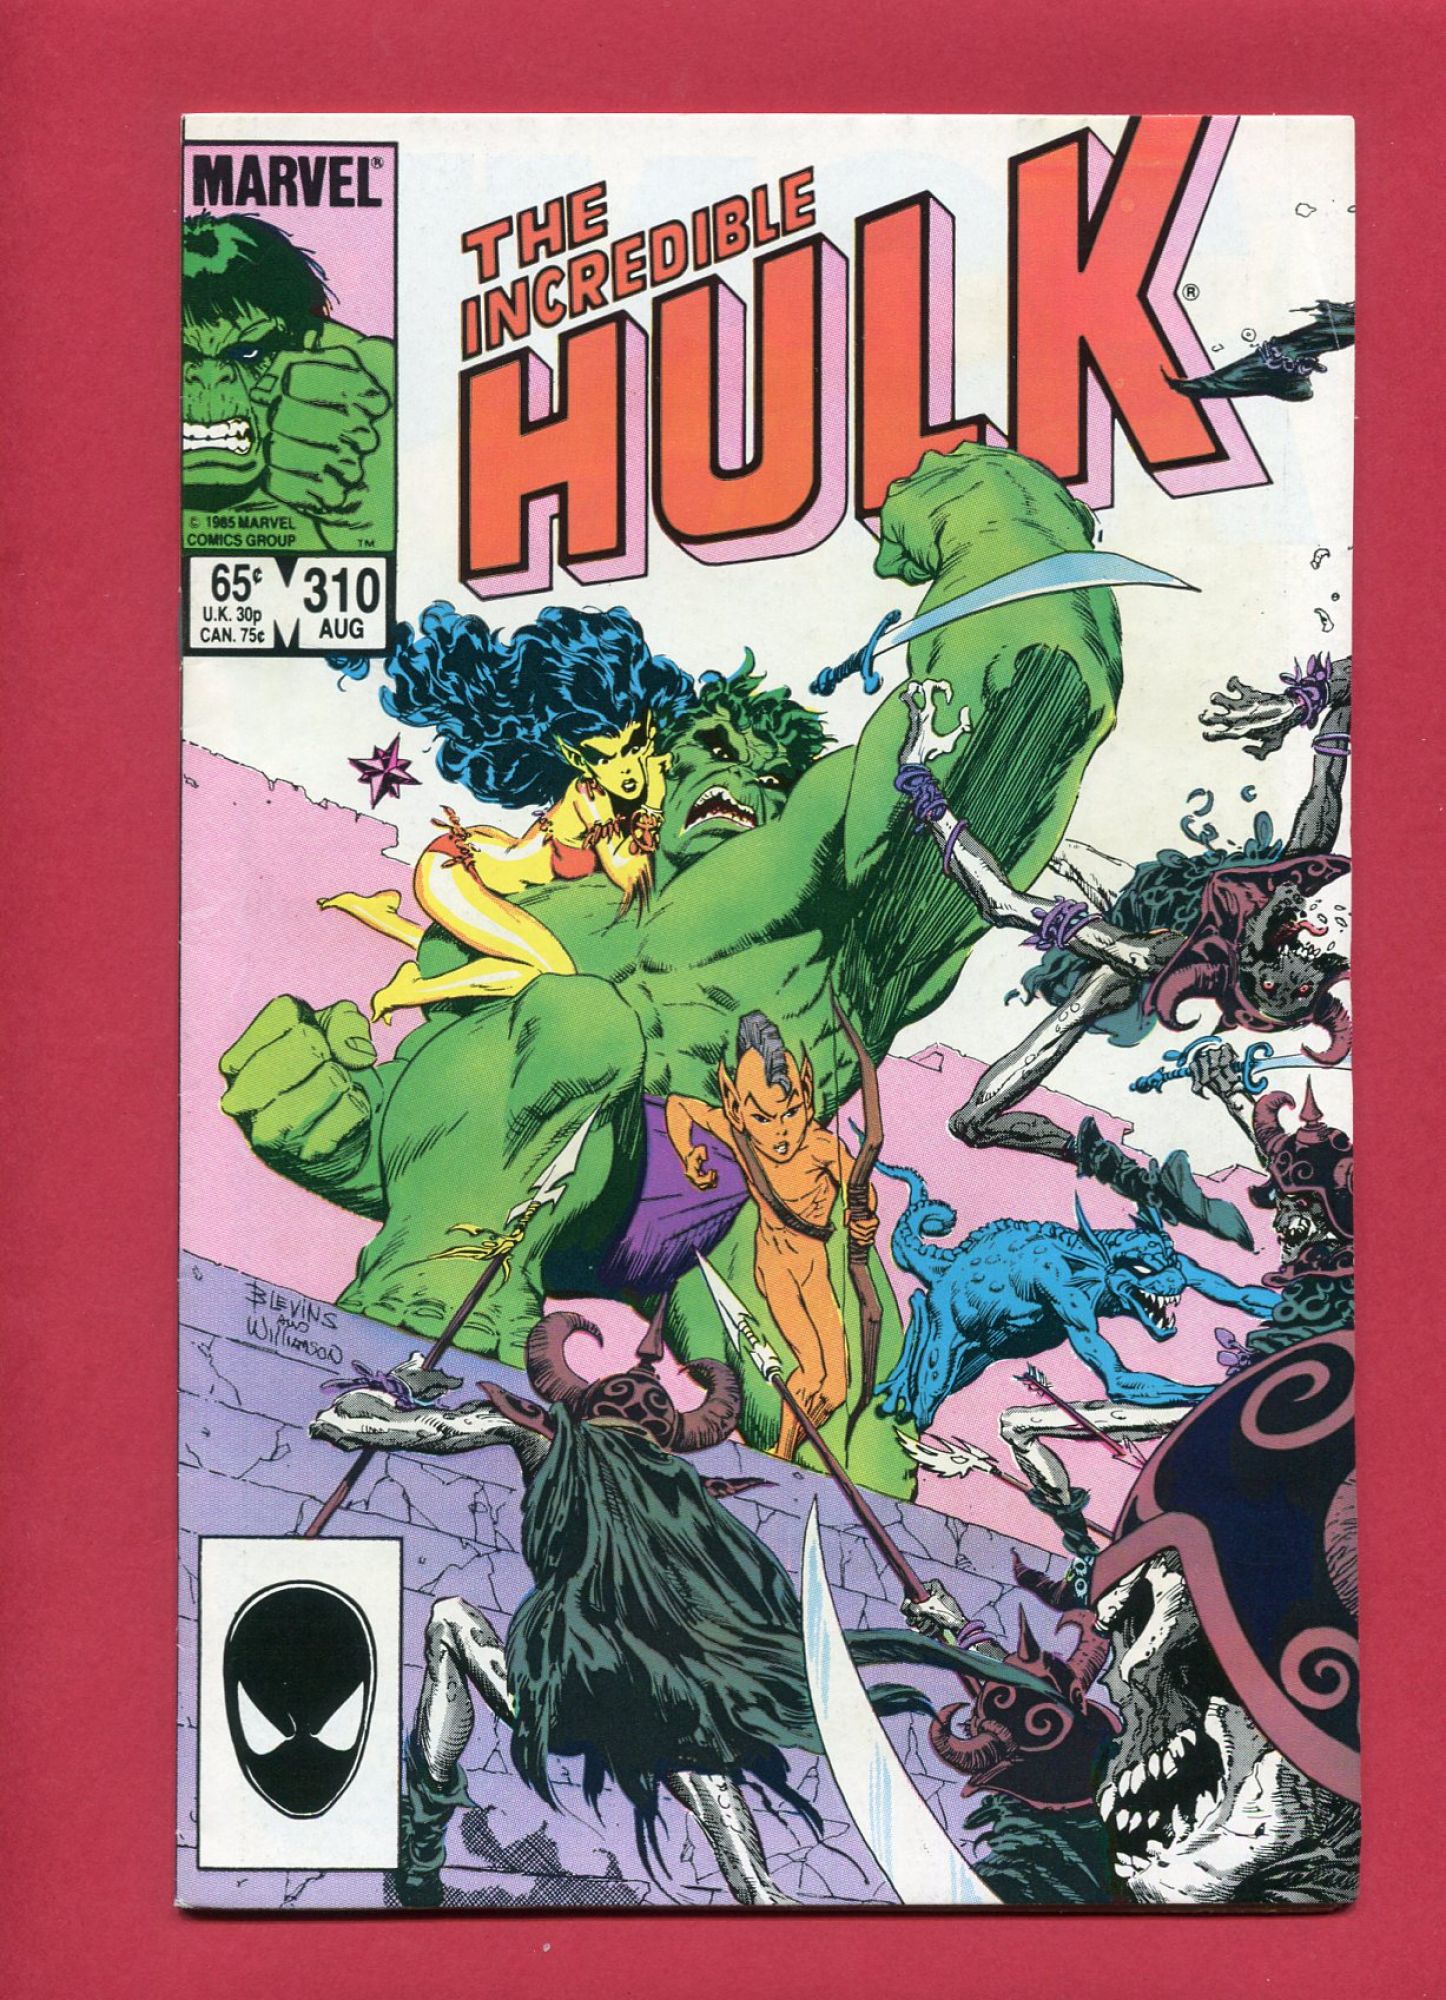 Incredible Hulk #310, Aug 1985, 7.0 FN/VF